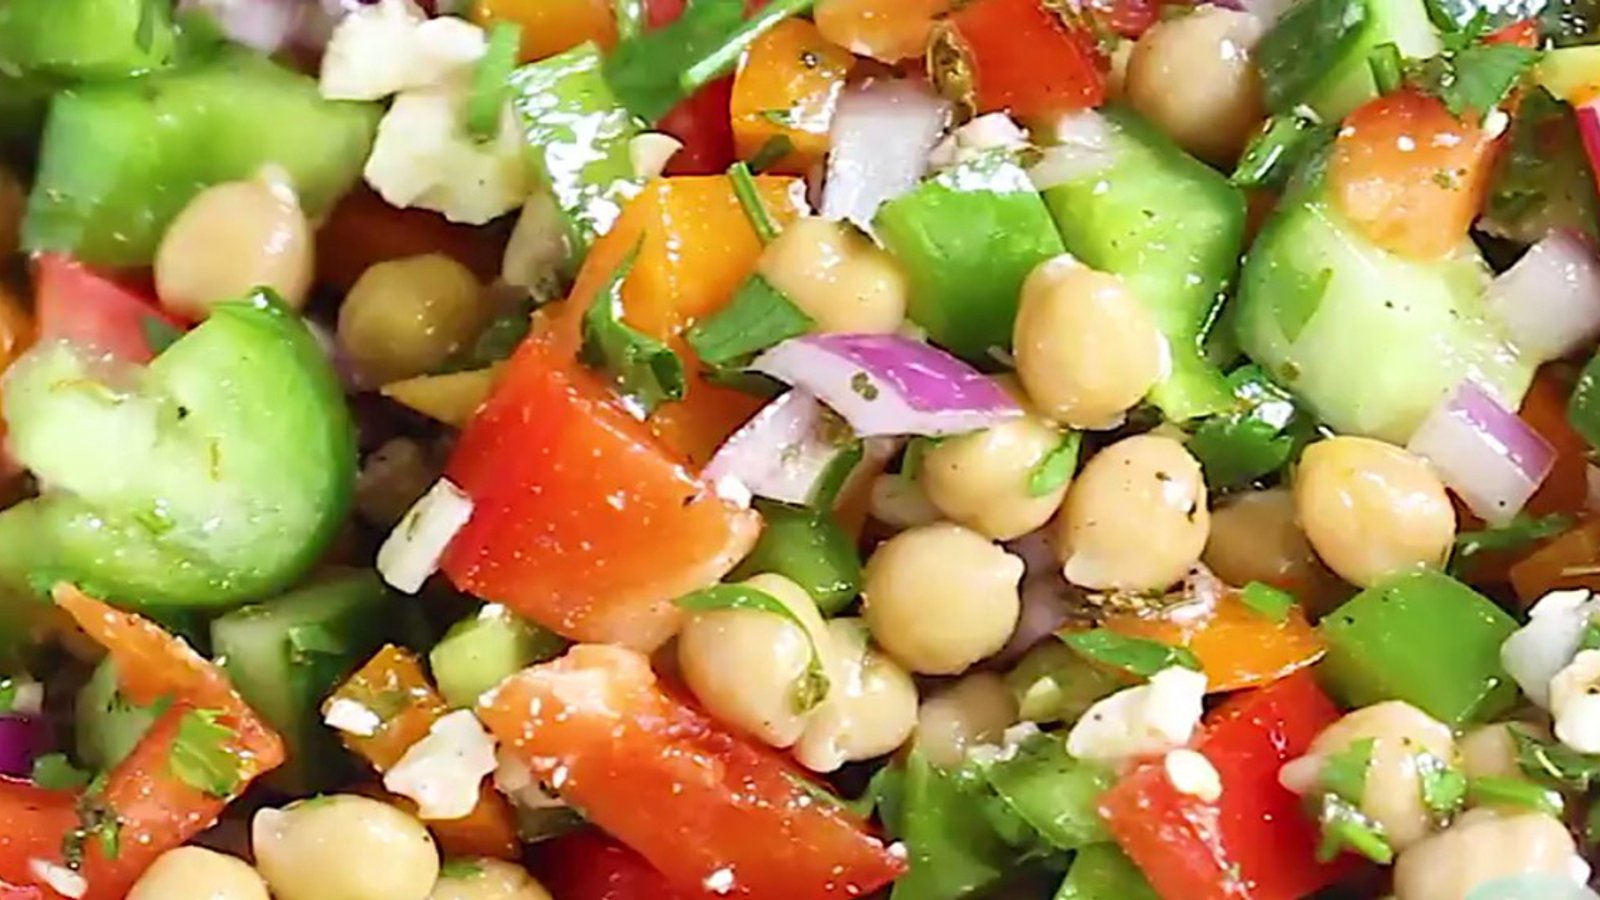 Salade de pois chiches méditerranéenne... Ce soir, on combine saveurs et couleurs exceptionnelles 